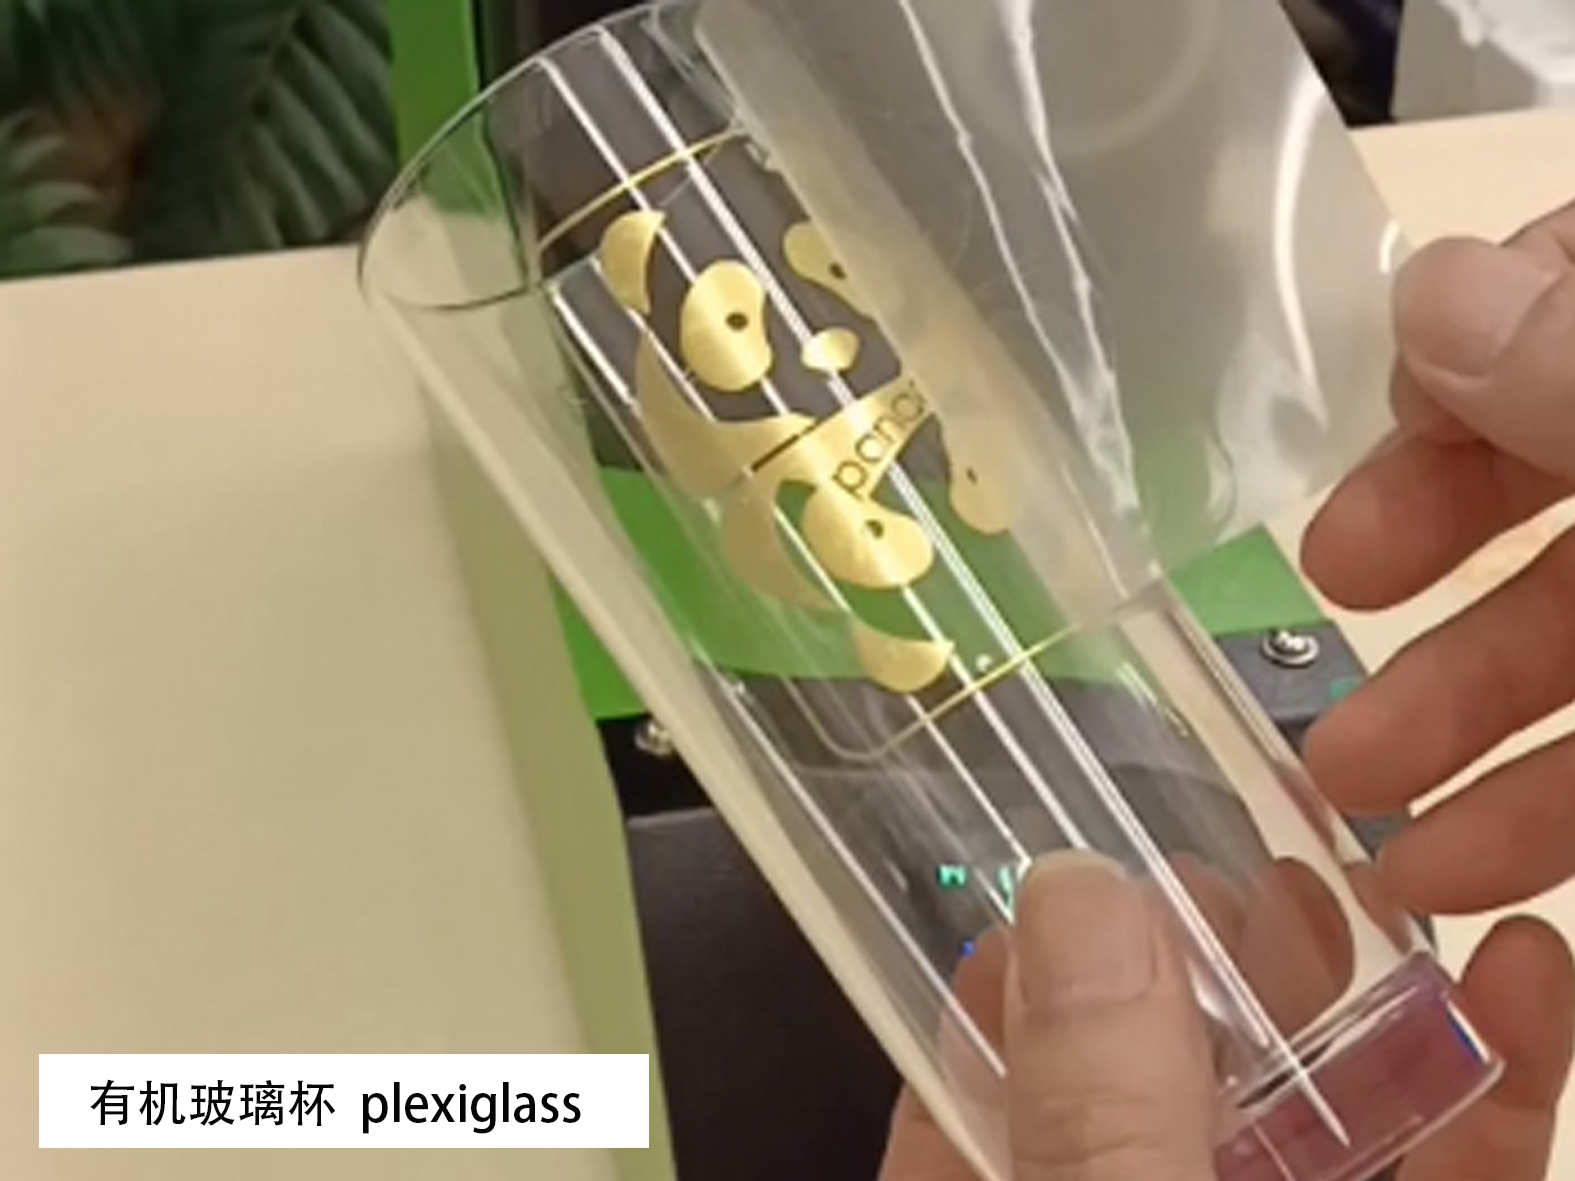 用金色热转印贴花箔定制有机玻璃杯的标签、徽标等， Metallic heat transfer decal foil for cup